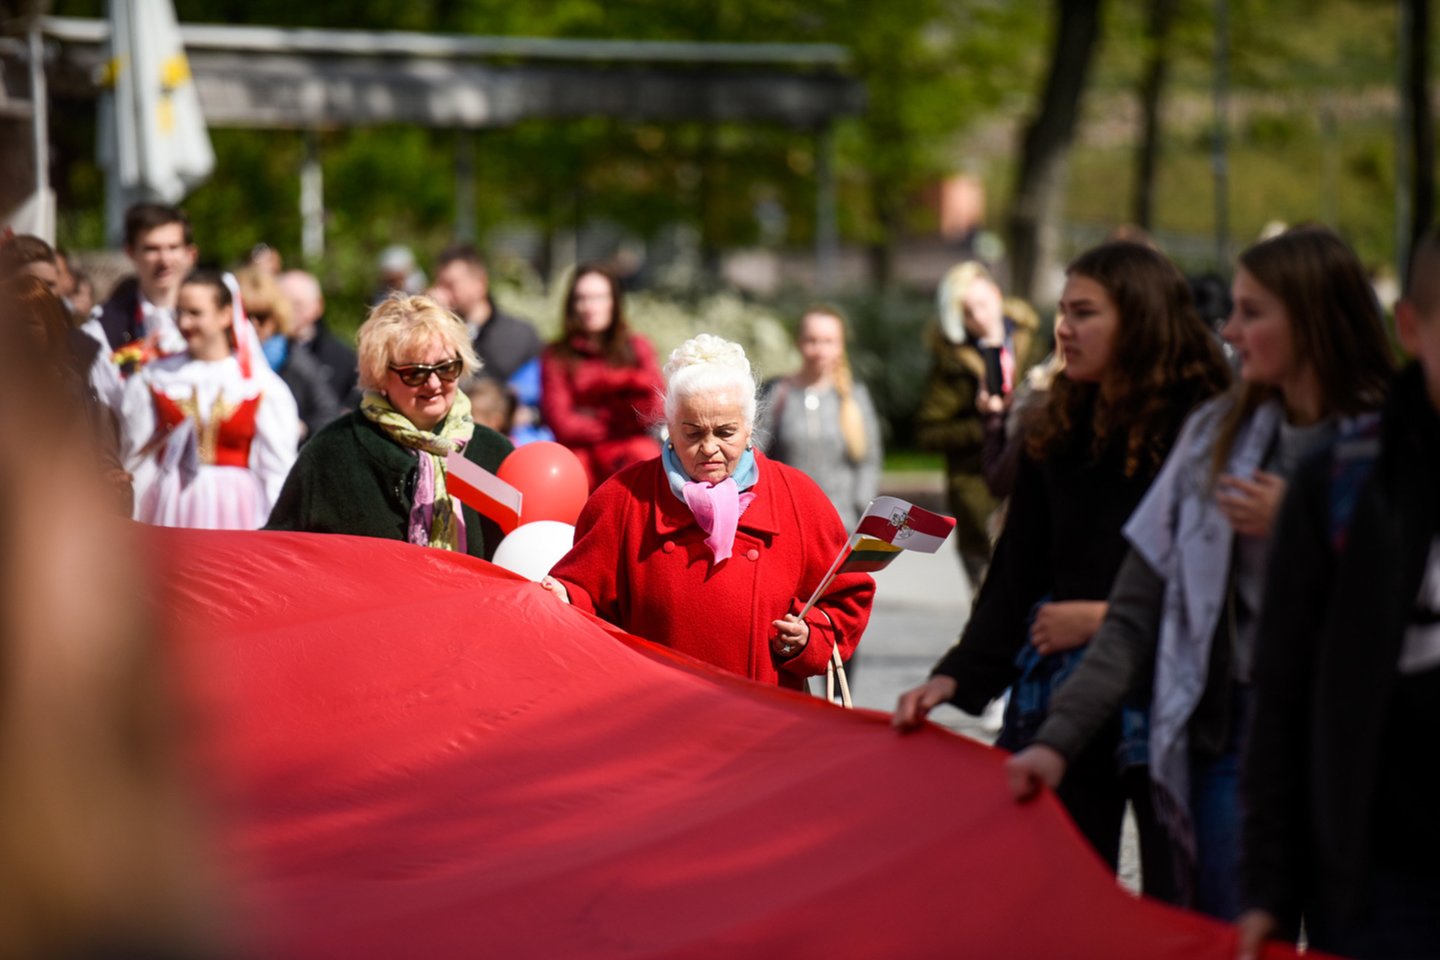 Pasipuošusi Lenkijos valstybinėmis spalvomis ir mosuodama vėliavomis Gedimino prospektu žygiavo lenkų bendruomenė.<br> D.Umbraso nuotr.